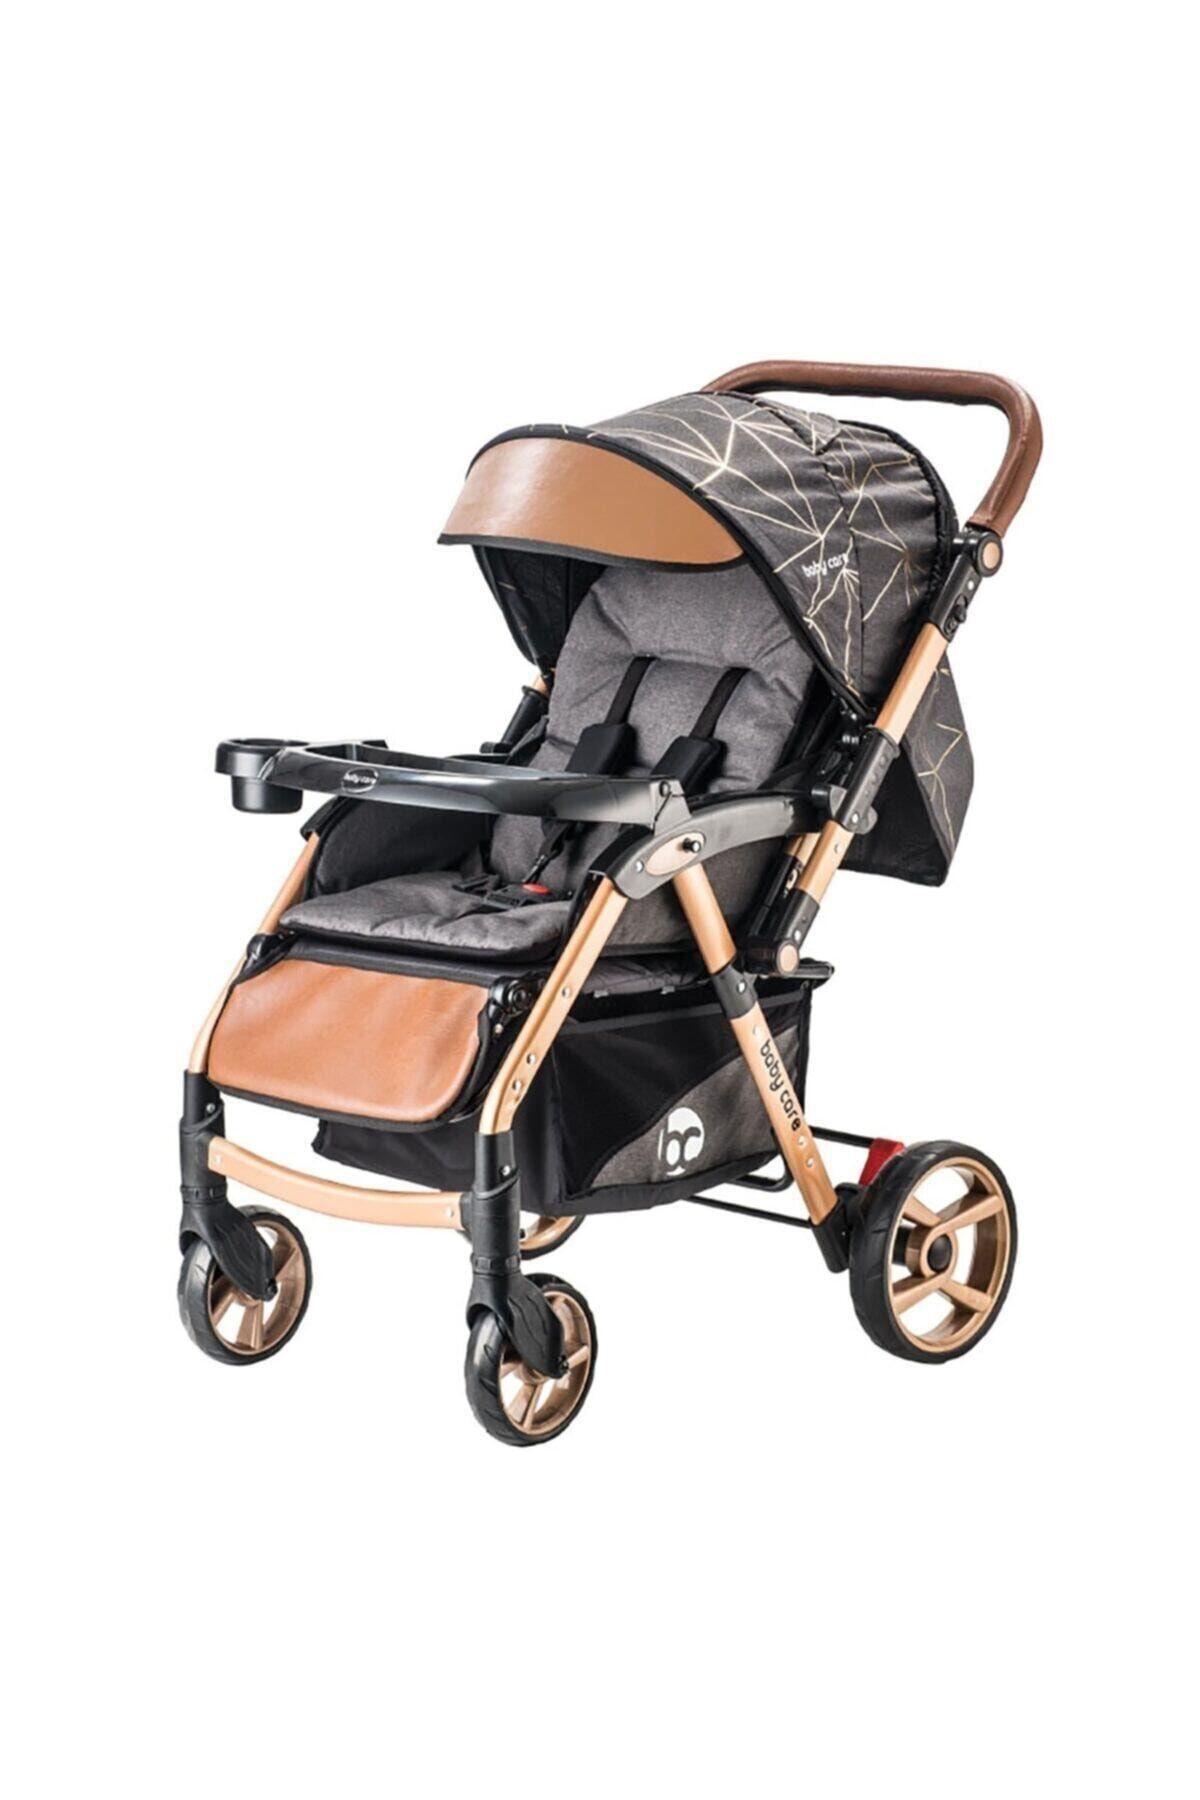 Johnson Baby Care Maxi Gold Çift Yönlü Bebek Arabası